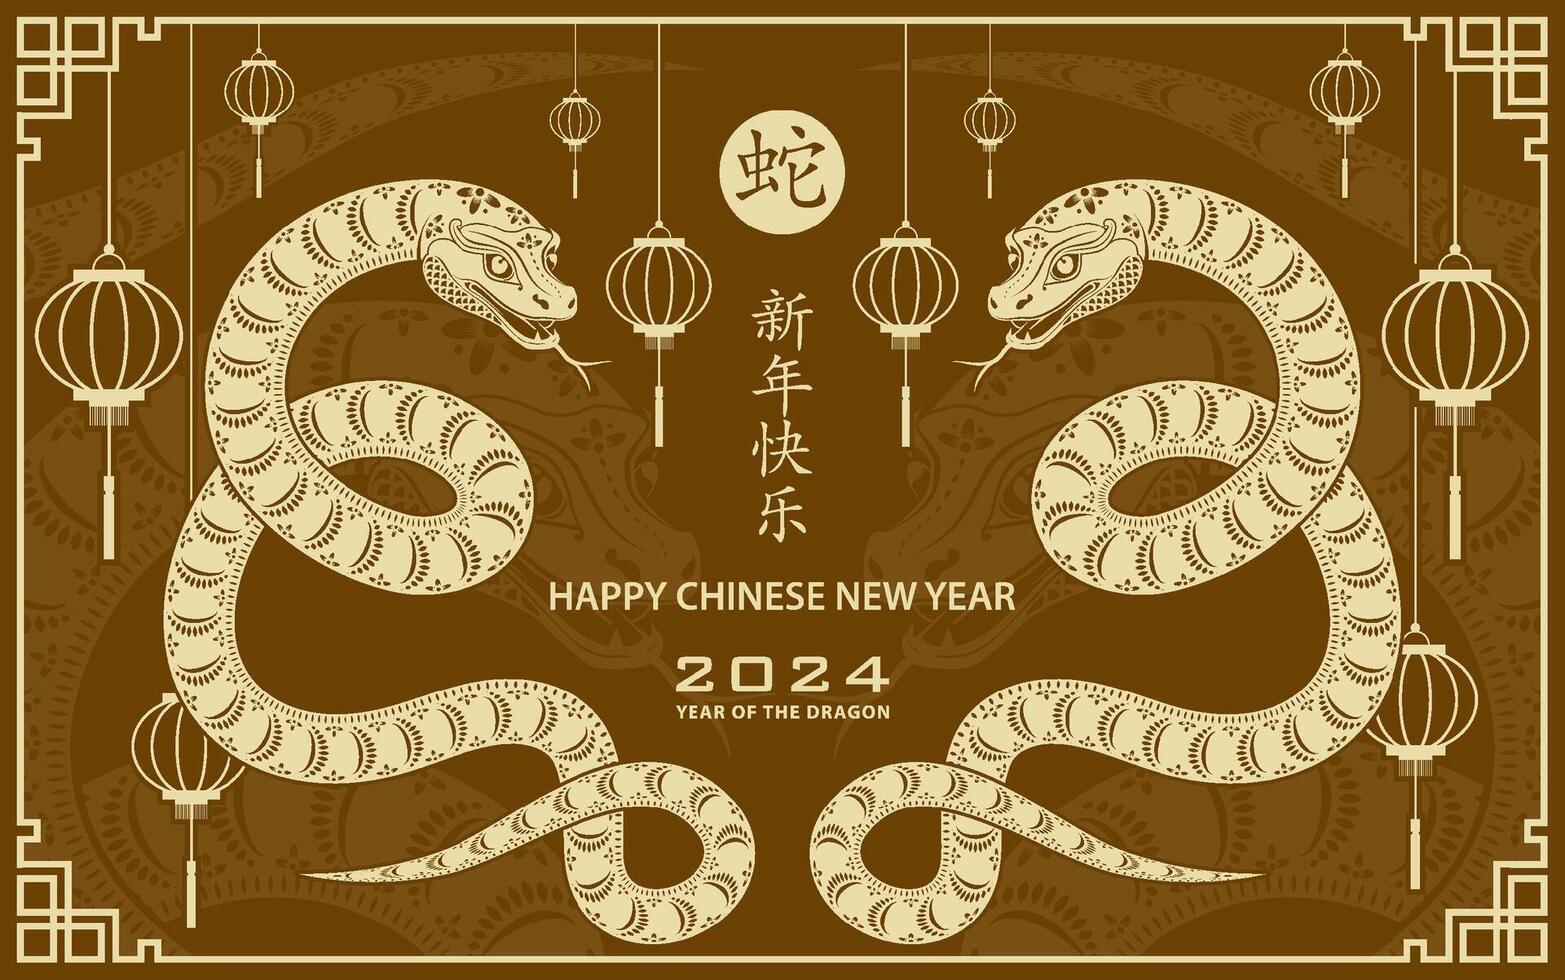 contento Cinese nuovo anno 2025 zodiaco cartello, anno di il serpente vettore